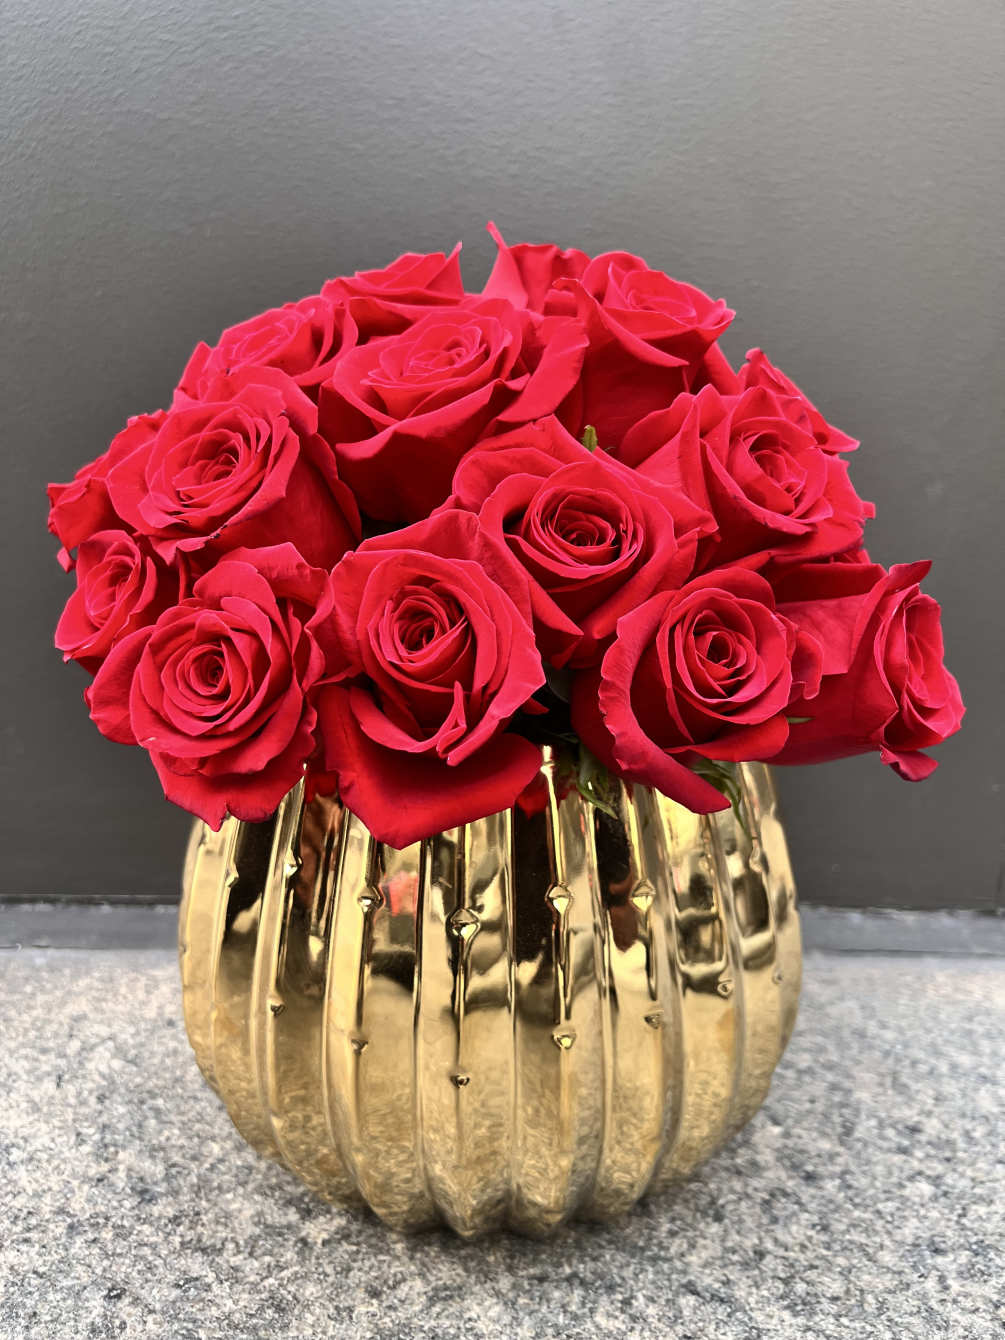 Premium Red Roses in a gold beautiful ceramic container. 

